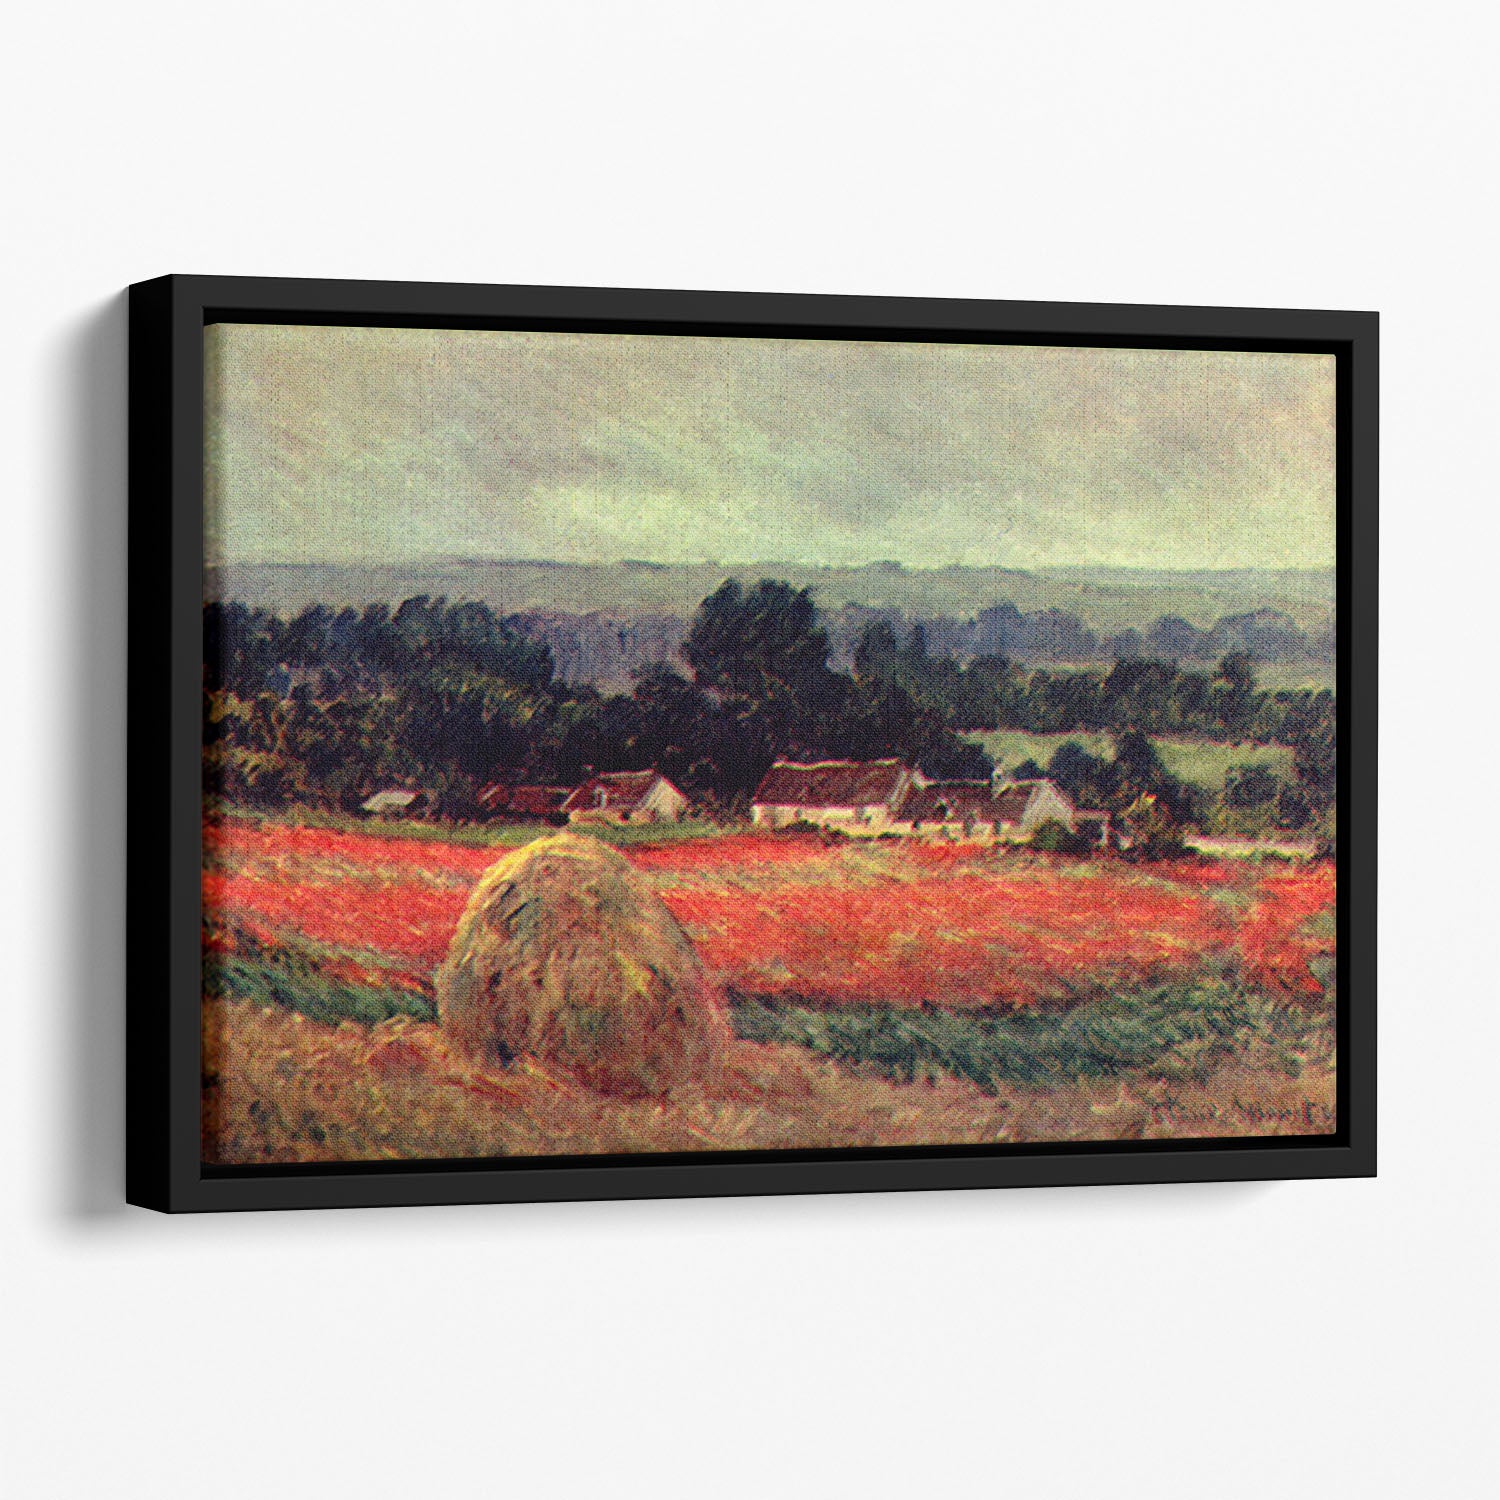 The poppy Blumenfeld The barn by Monet Floating Framed Canvas